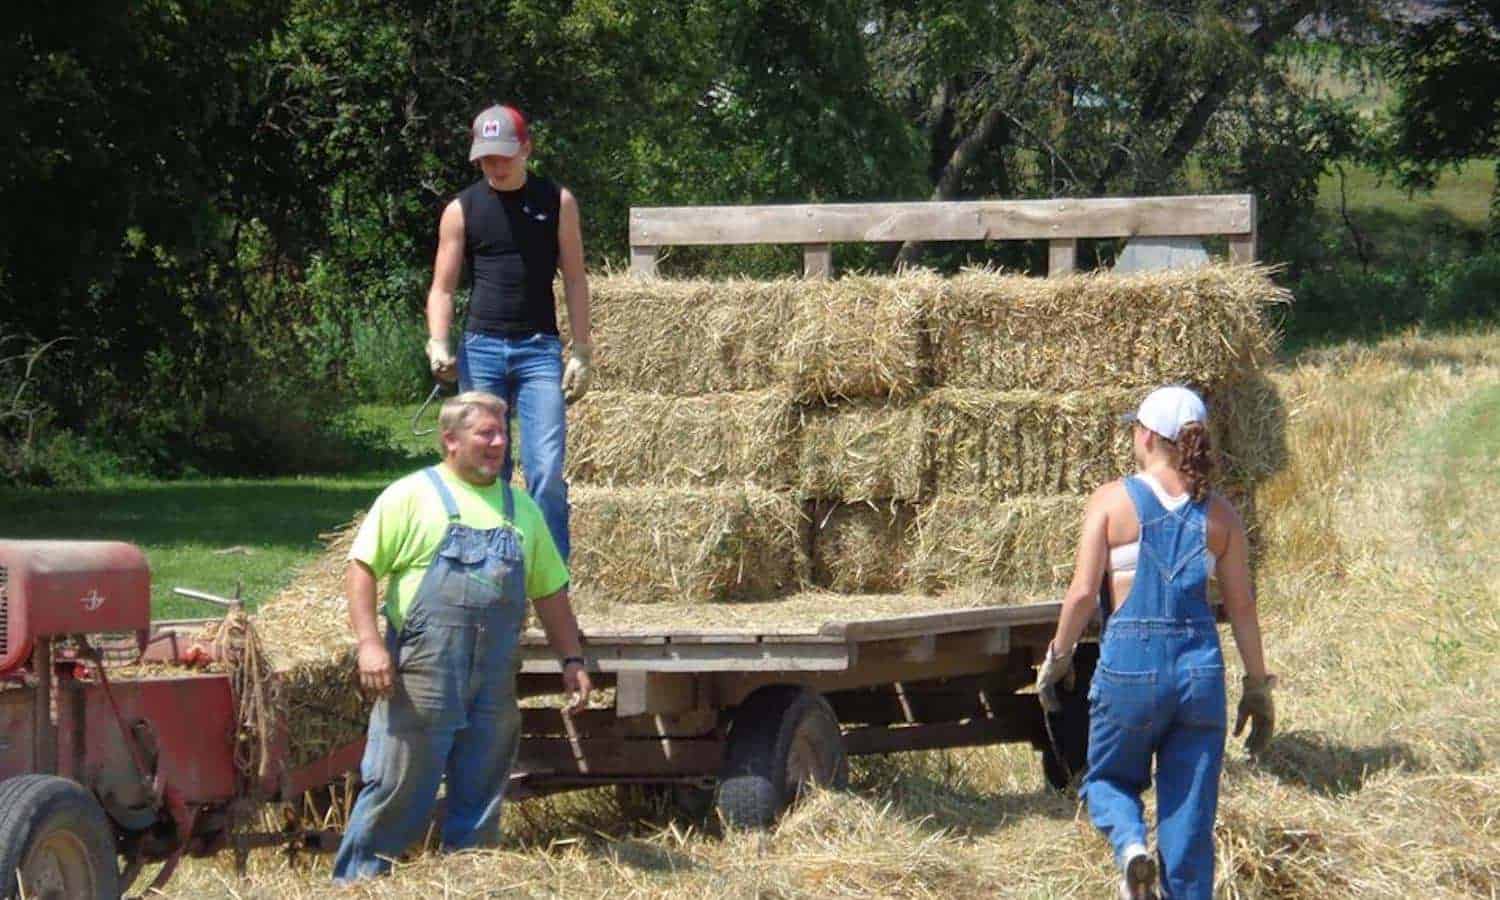 爱荷华州的一个家庭将他们曾祖父曾经拥有的农田转变，开始了一种新的可持续实践传统。